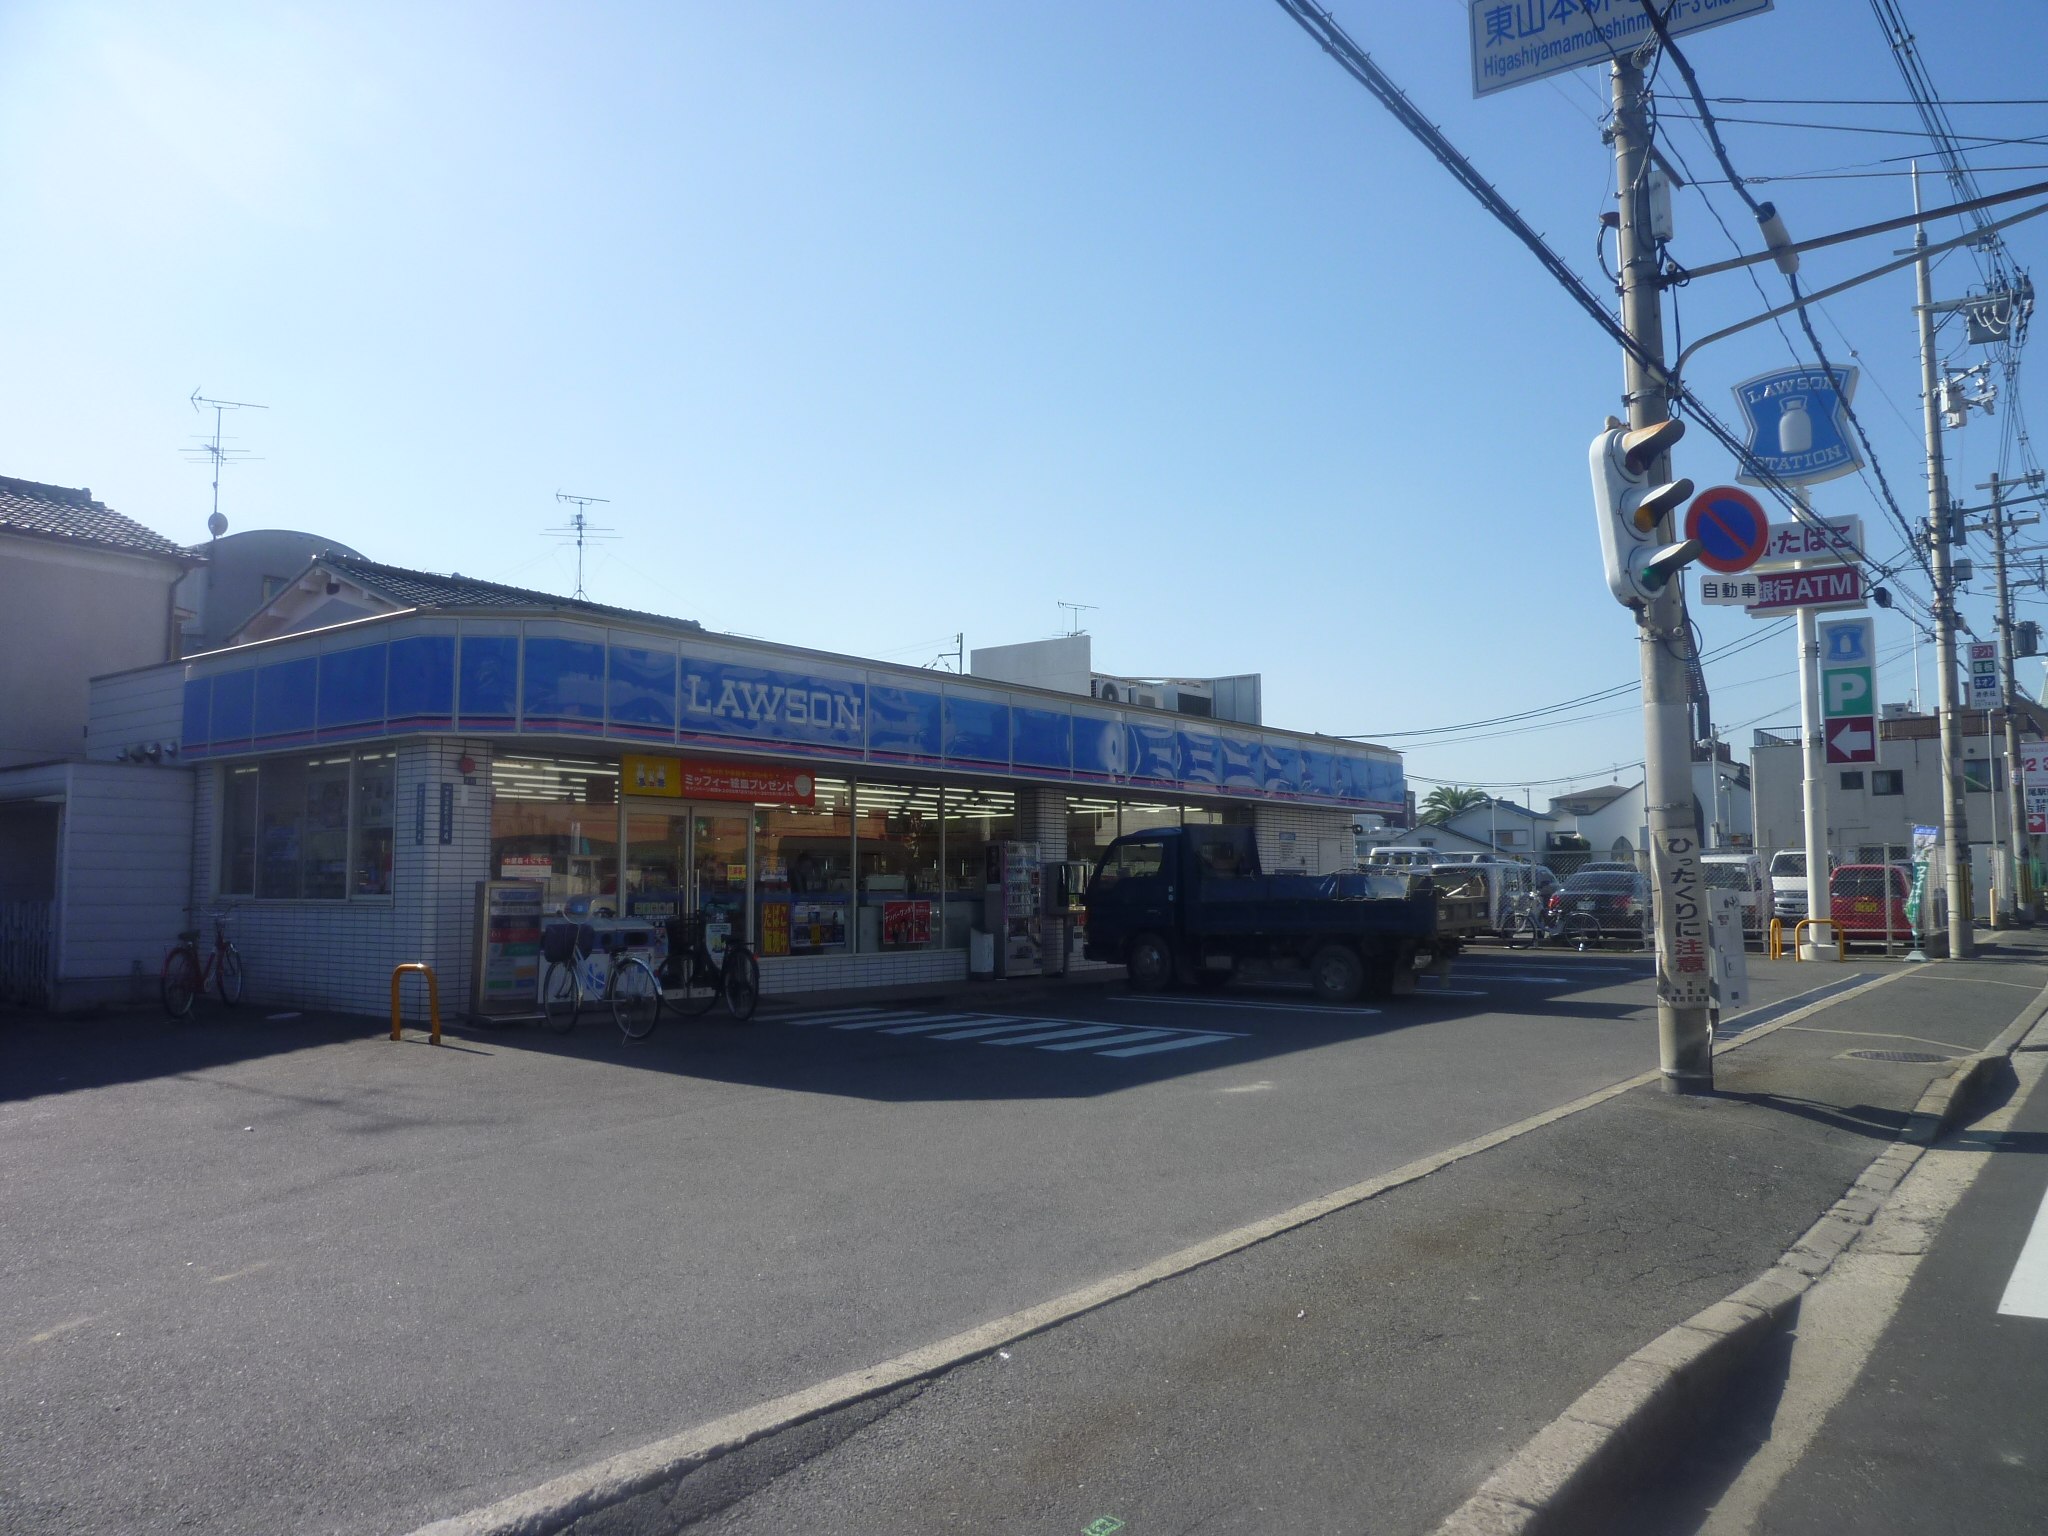 Convenience store. Lawson Yao Higashiyamamotoshin-cho 3-chome up (convenience store) 455m